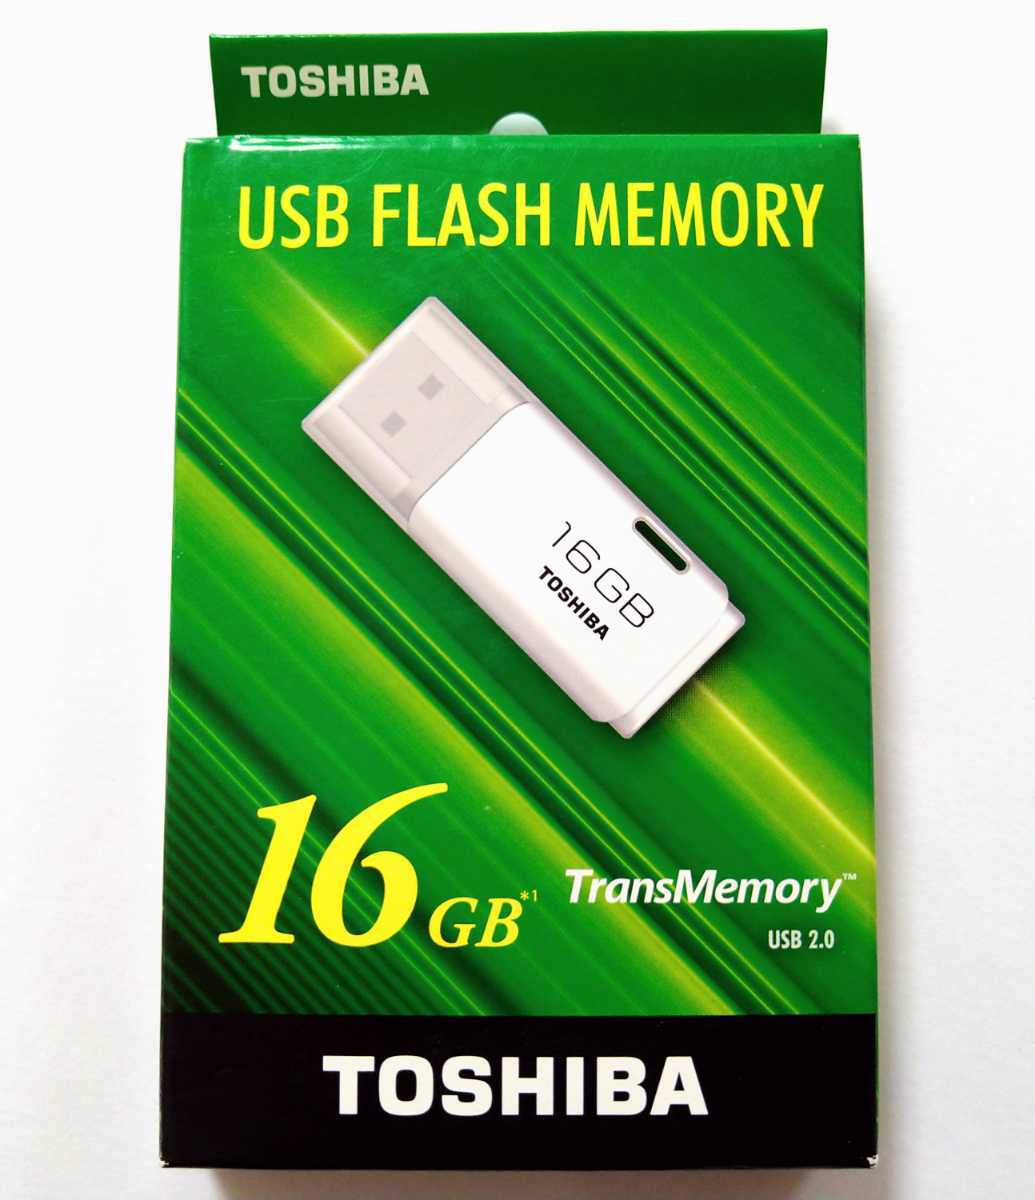 送料無料★東芝 USBフラッシュメモリ 16GB TOSHIBA TransMemory USBメモリ メモリスティック メモリースティック TNU-A016G USB2.0